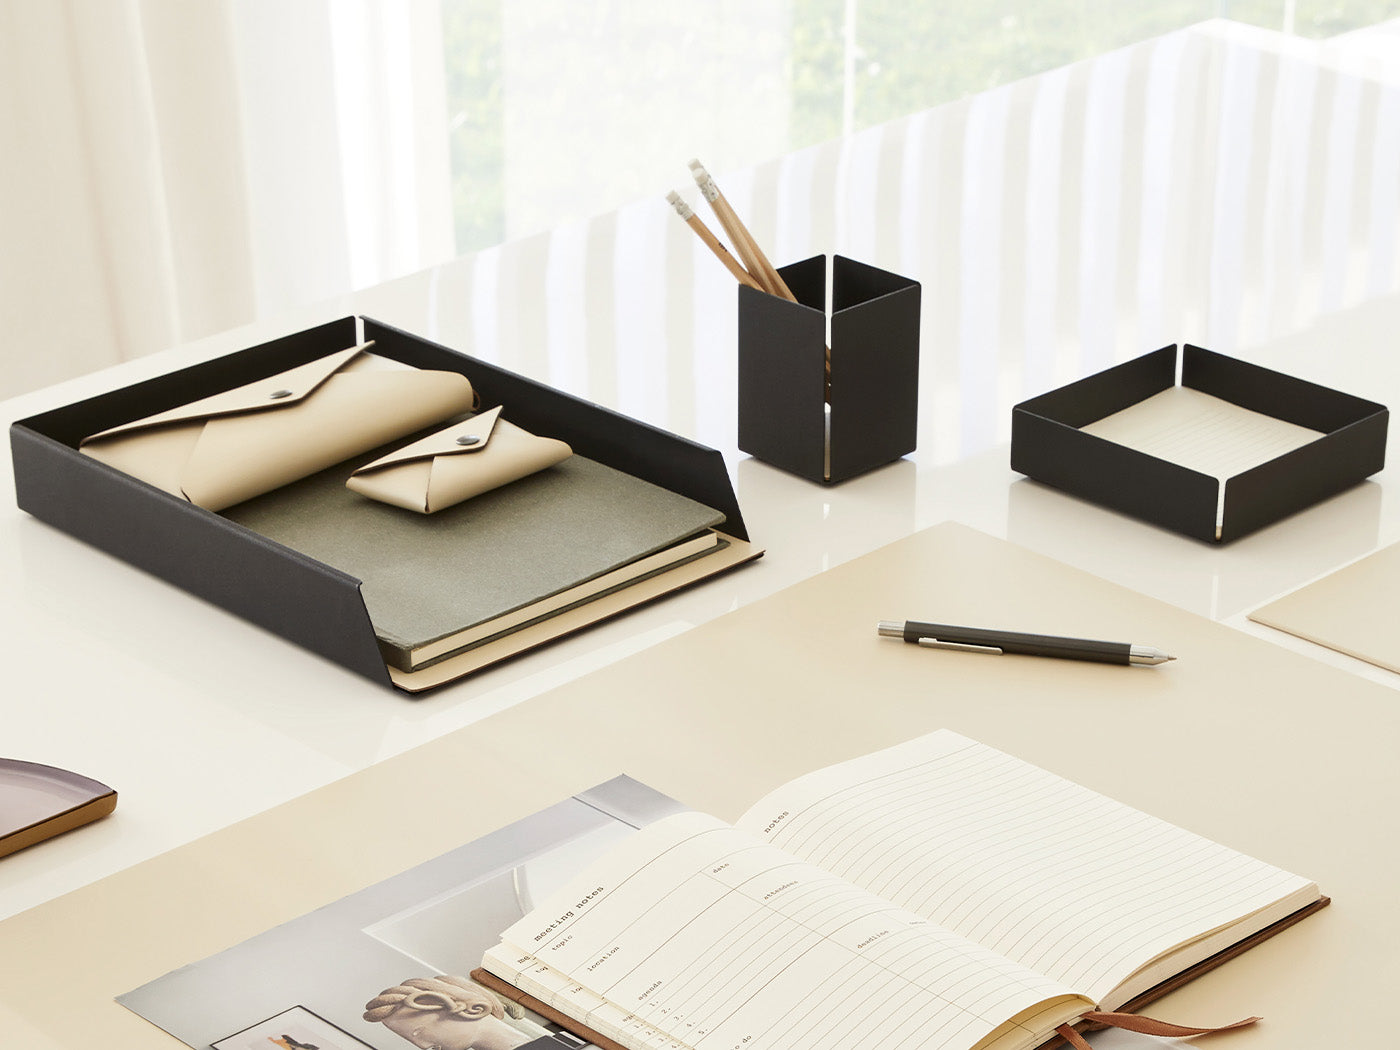 Uno stile organizzato: fai ordine sulla scrivania con accessori di design!